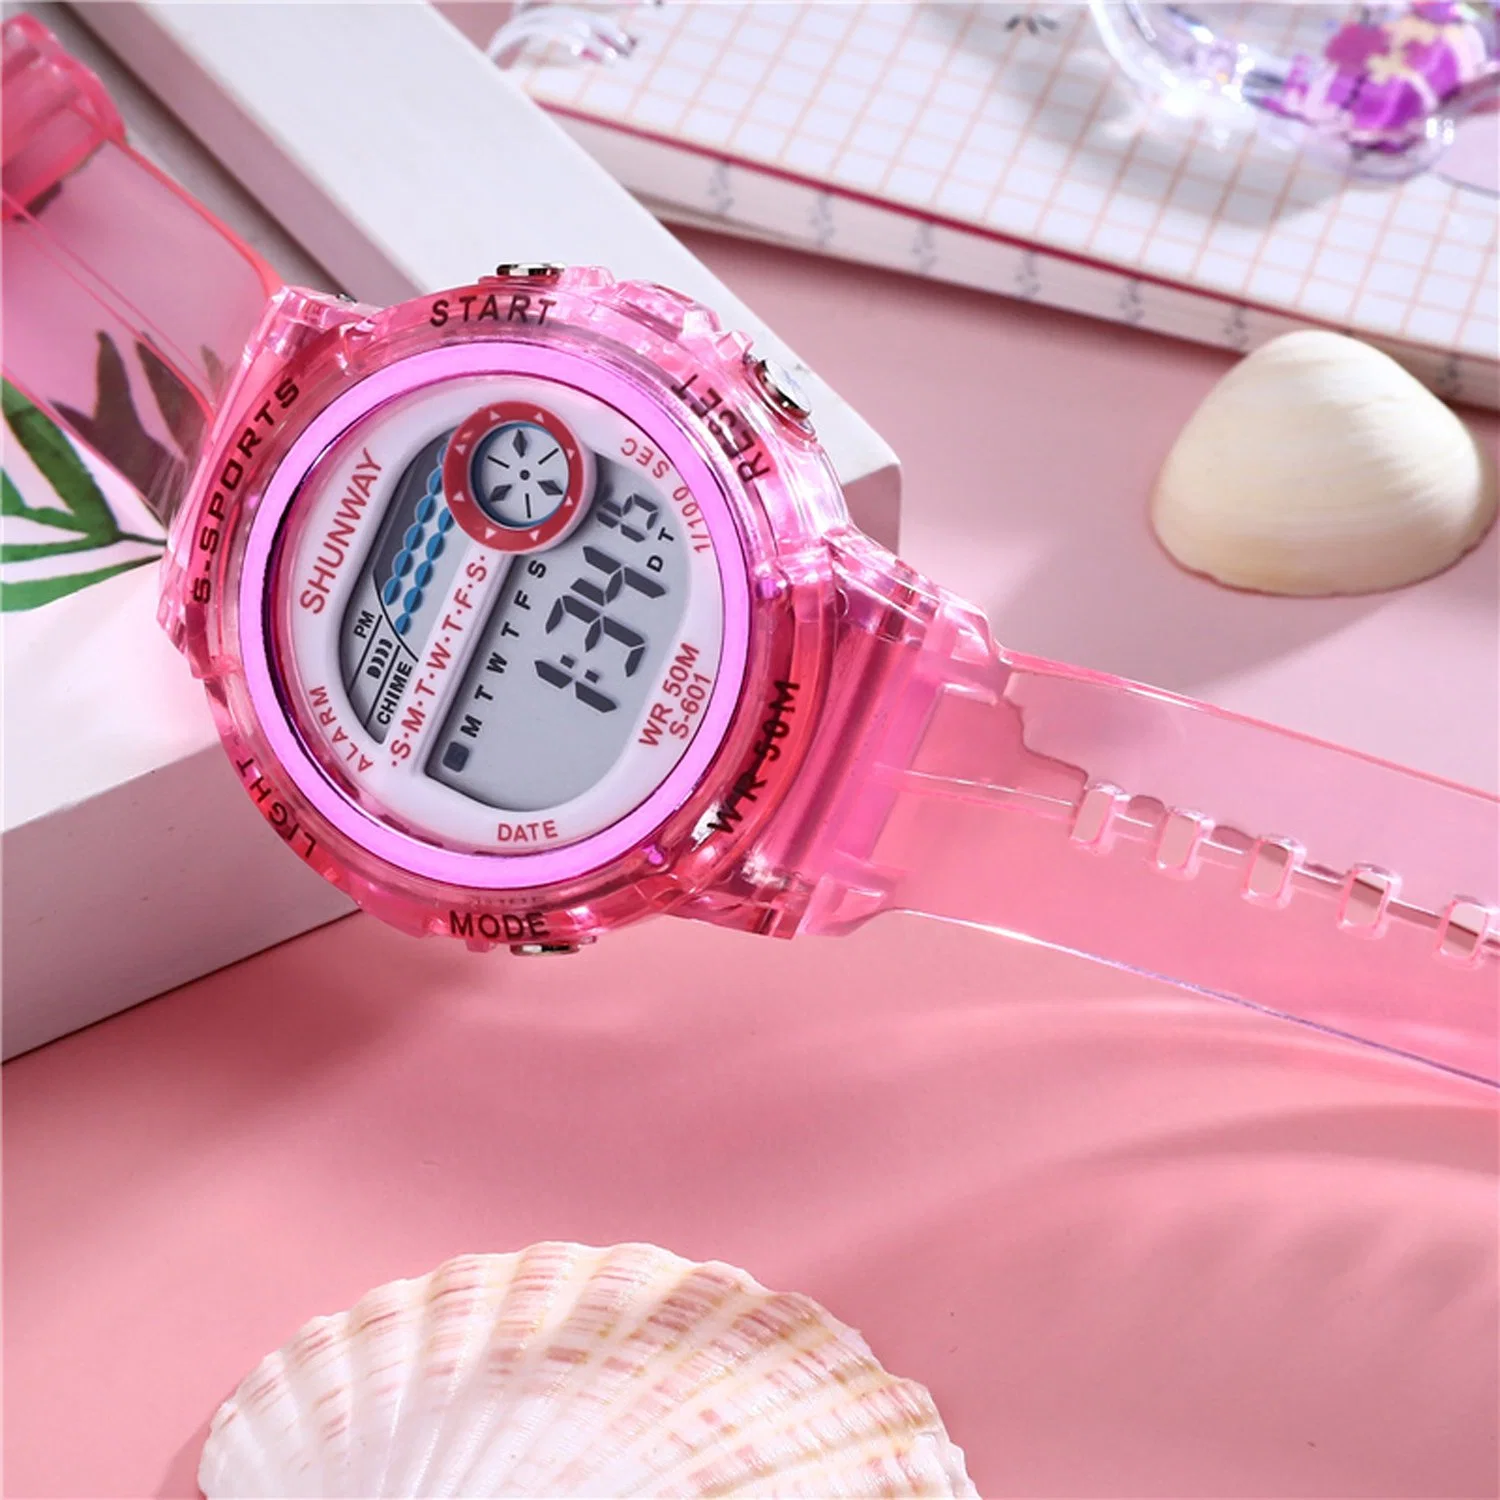 Digital Watch Woman Watch Lady Watch Kids Watch LED Light Watch 5 ATM Waterproof Watch Sport Watch Wrist Watch Analog Digital Watch